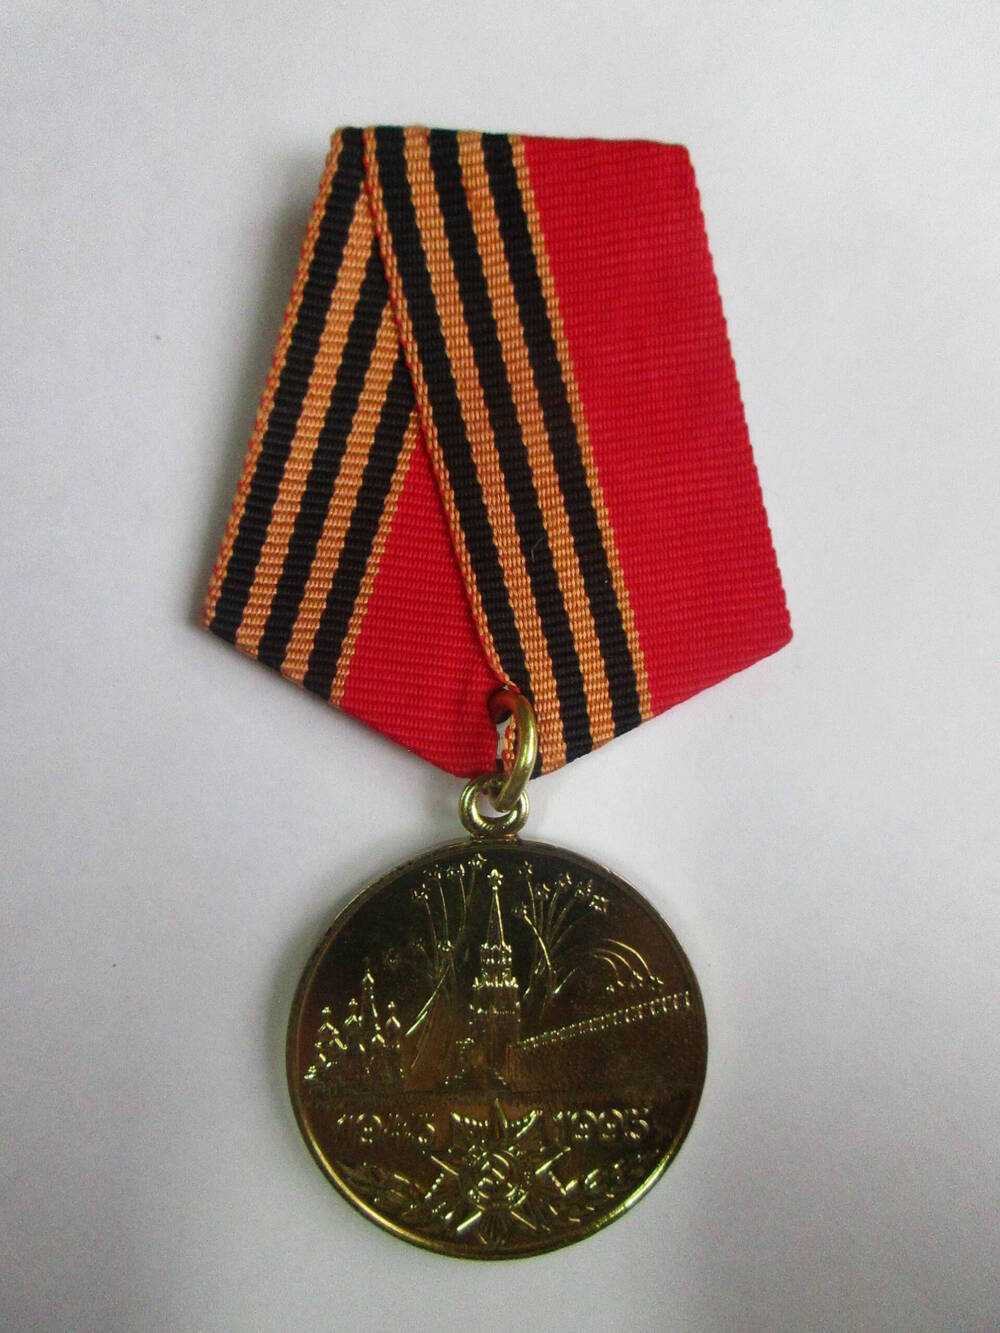 Медаль 50 лет Победы в ВОВ 1941-1945гг. Награждена Сектименко М.М.